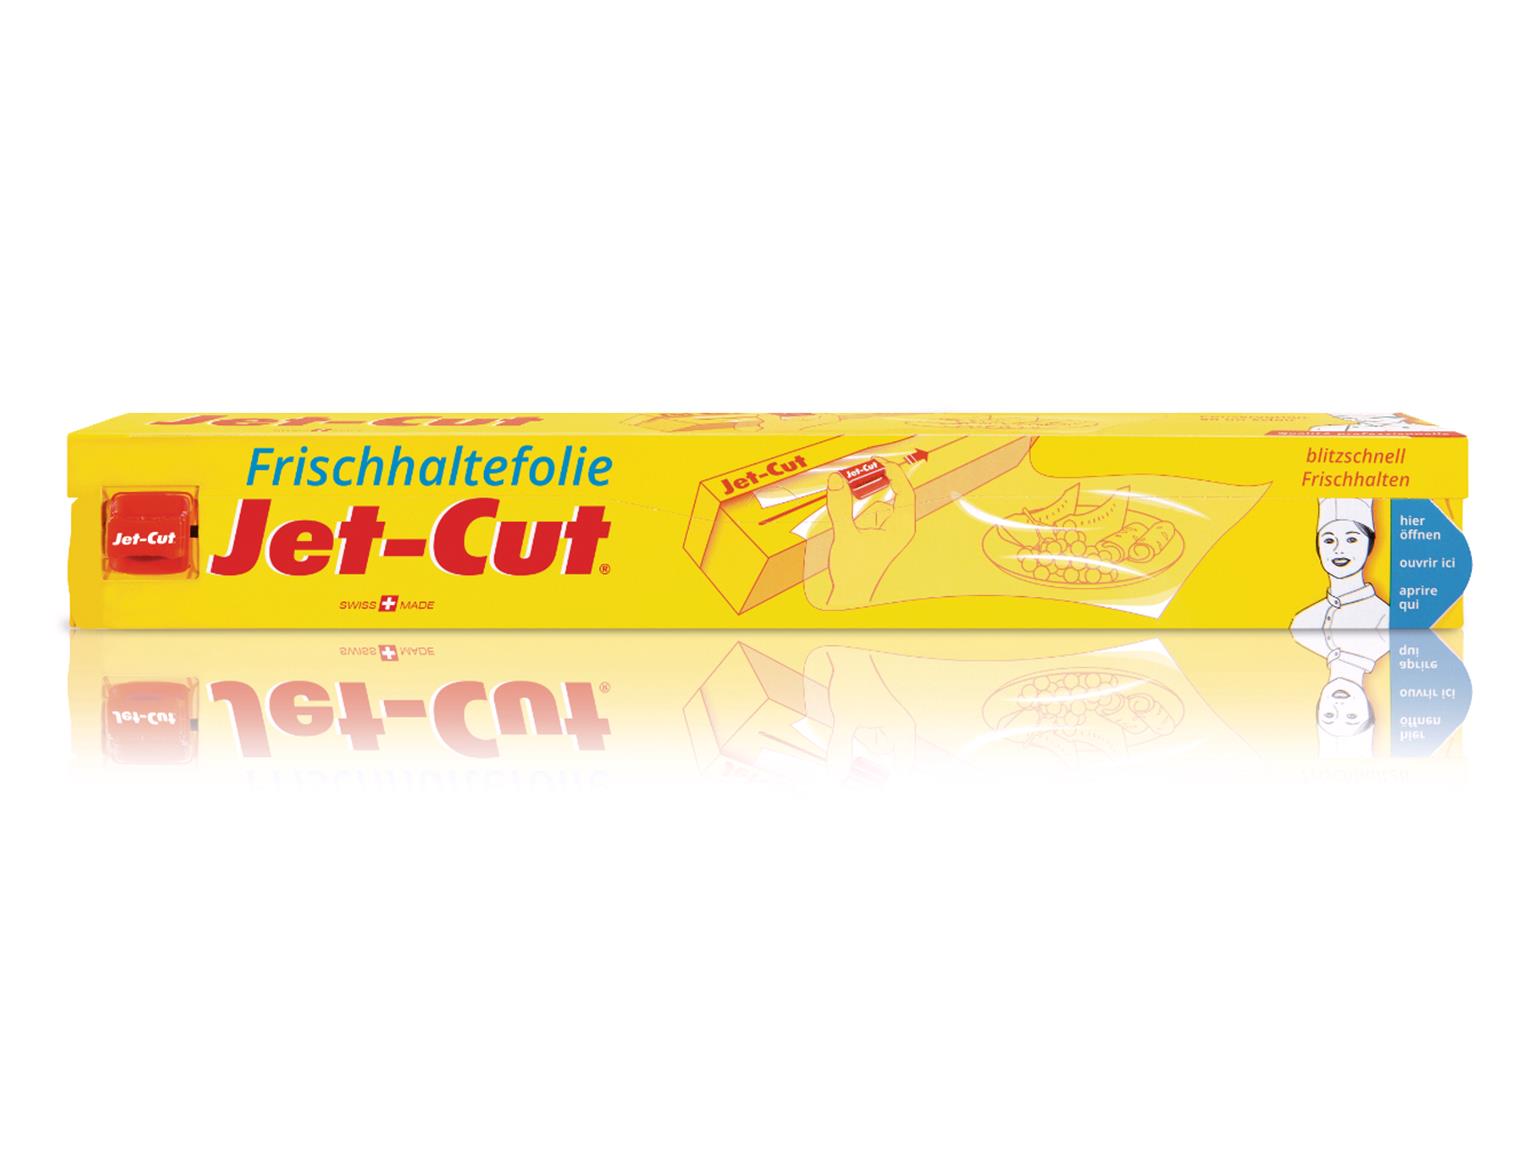 FRISCHHALTEFOLIE JET-CUT  30 cm x 120 m, Jet-Cut